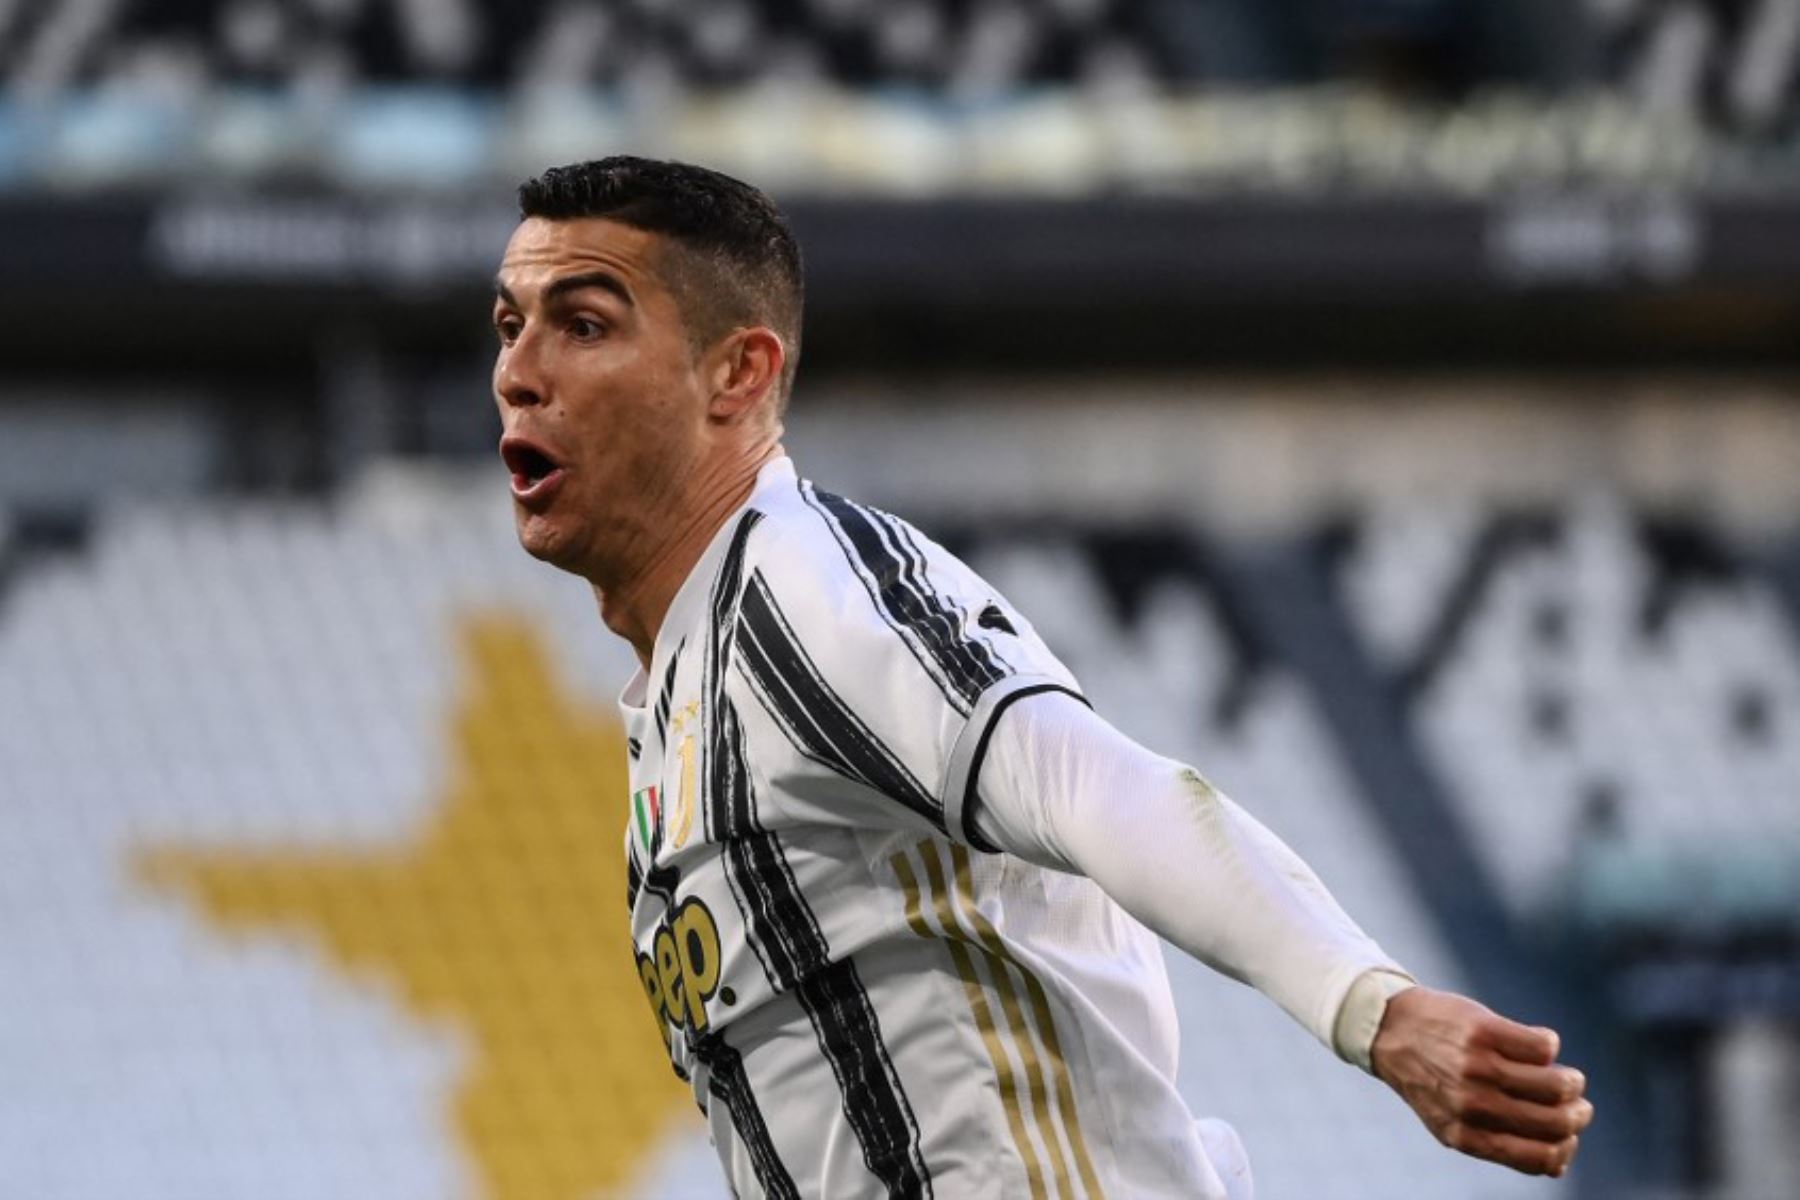 El delantero portugués de la Juventus, Cristiano Ronaldo, celebra tras abrir el marcador durante el partido de fútbol de la Serie A italiana Juventus vs Napoli.

Foto: AFP